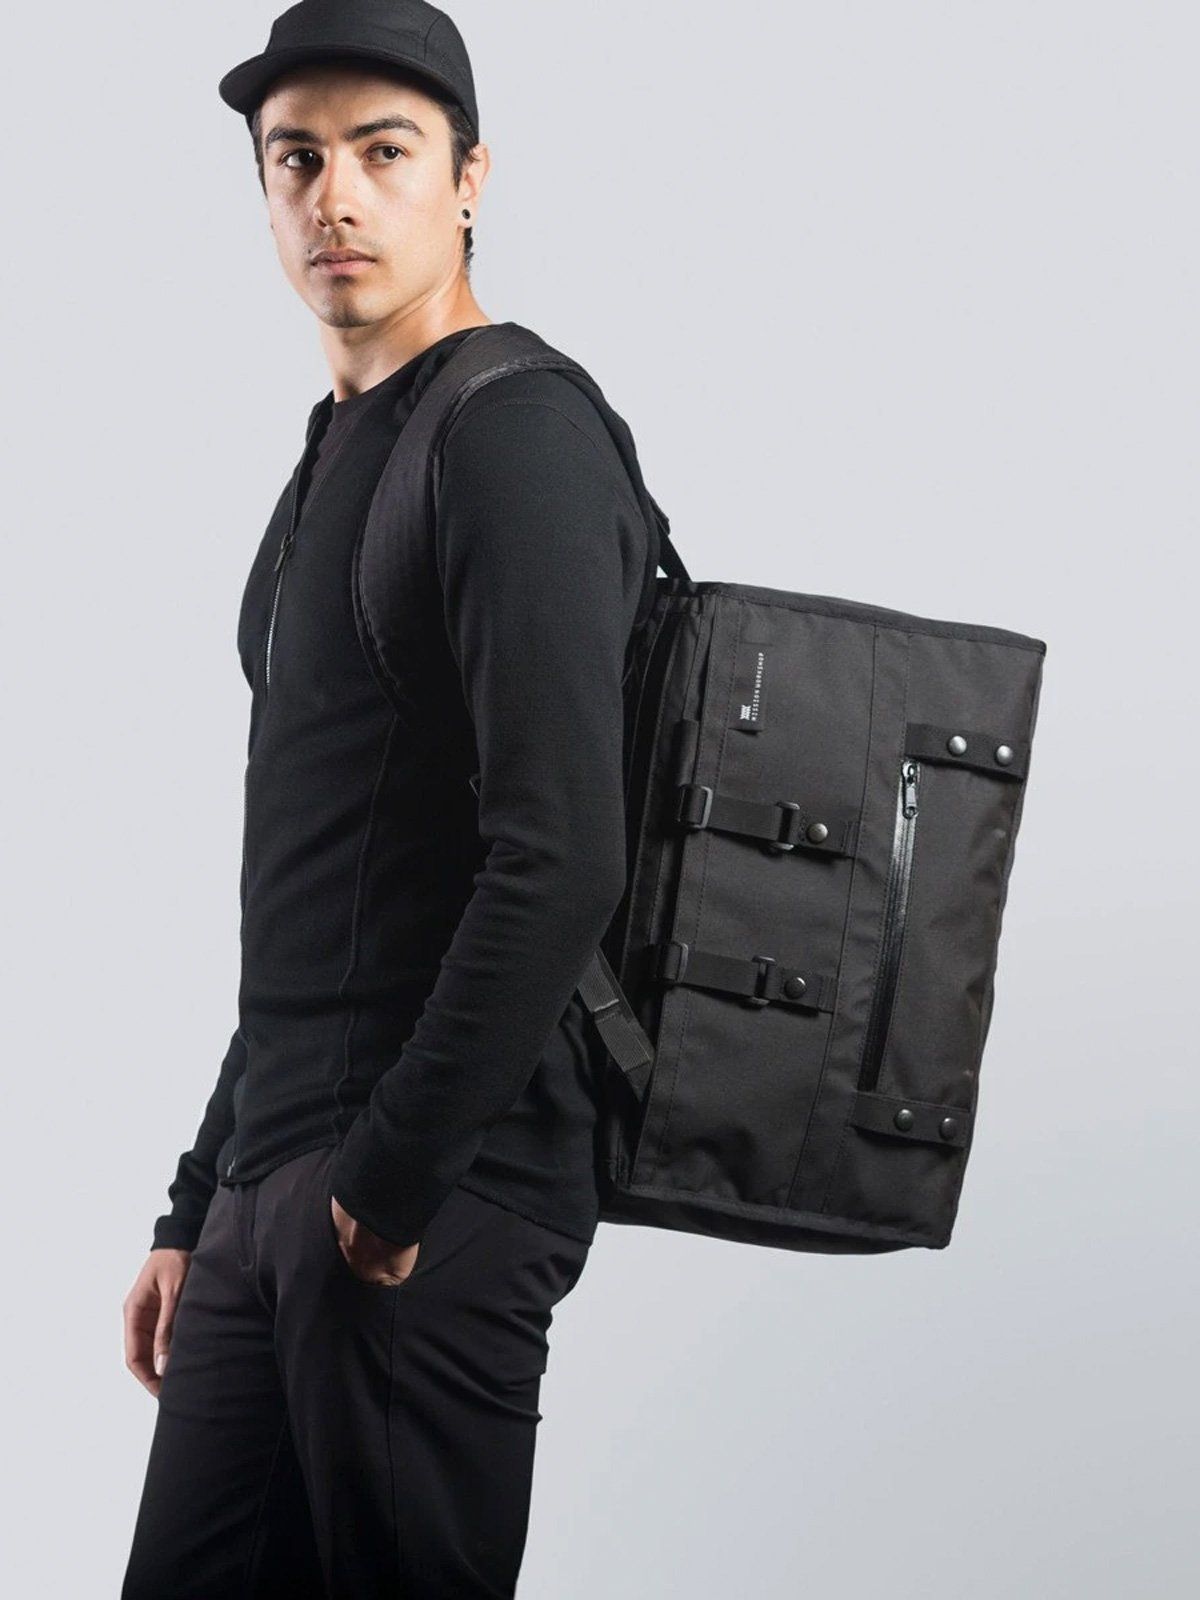 Transit : Duffle Backpack Harness från Mission Workshop - Väderbeständiga väskor och tekniska kläder - San Francisco och Los Angeles - Byggda för att tåla - Garanterade för alltid